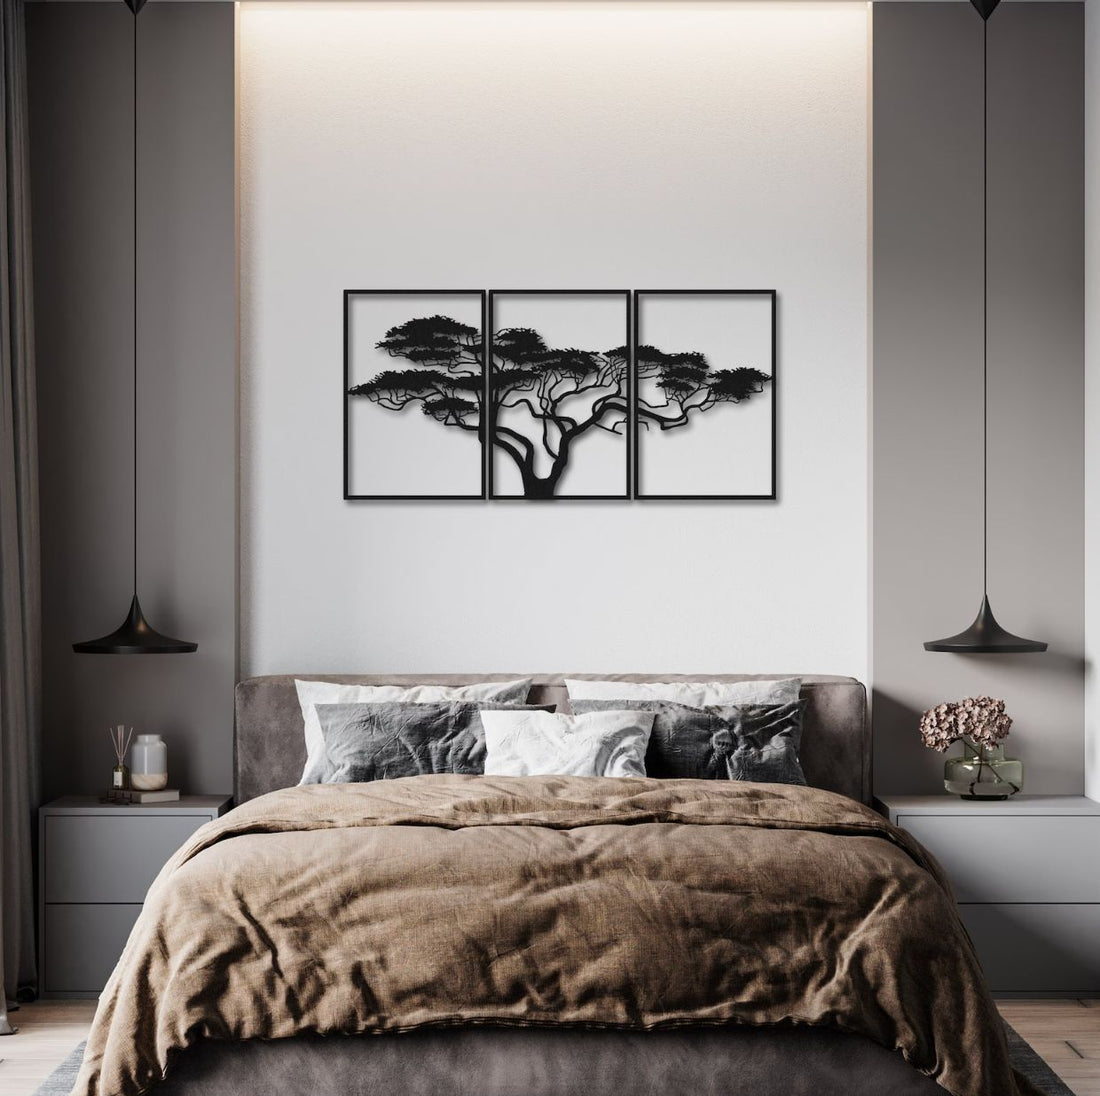 Triptych Tree Metal Wall Art - S(1250mm x 599mm) / Matt Black